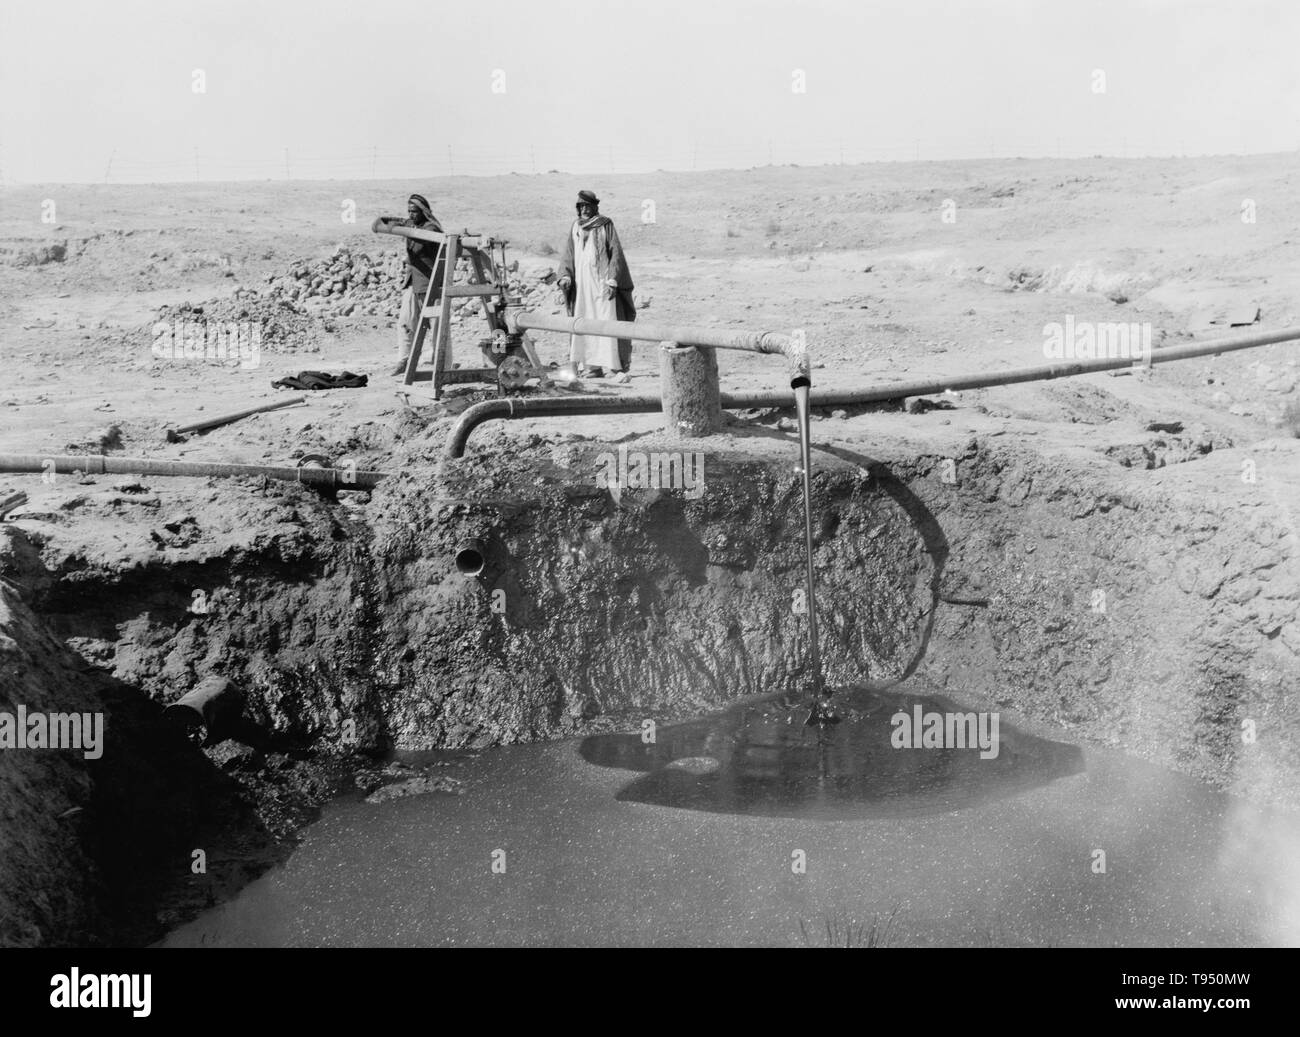 Männer pumpen Bitumen aus einem gut 1932, in einem Gebiet von bituminösen Brunnen südlich von Mosul, Irak. Bitumen ist ein schwarz viskose Mischung von Kohlenwasserstoffen natürlich oder als Rückstände aus Erdöl Destillation gewonnen. Es wird verwendet für Straßenbeläge und Dacharbeiten. Stockfoto